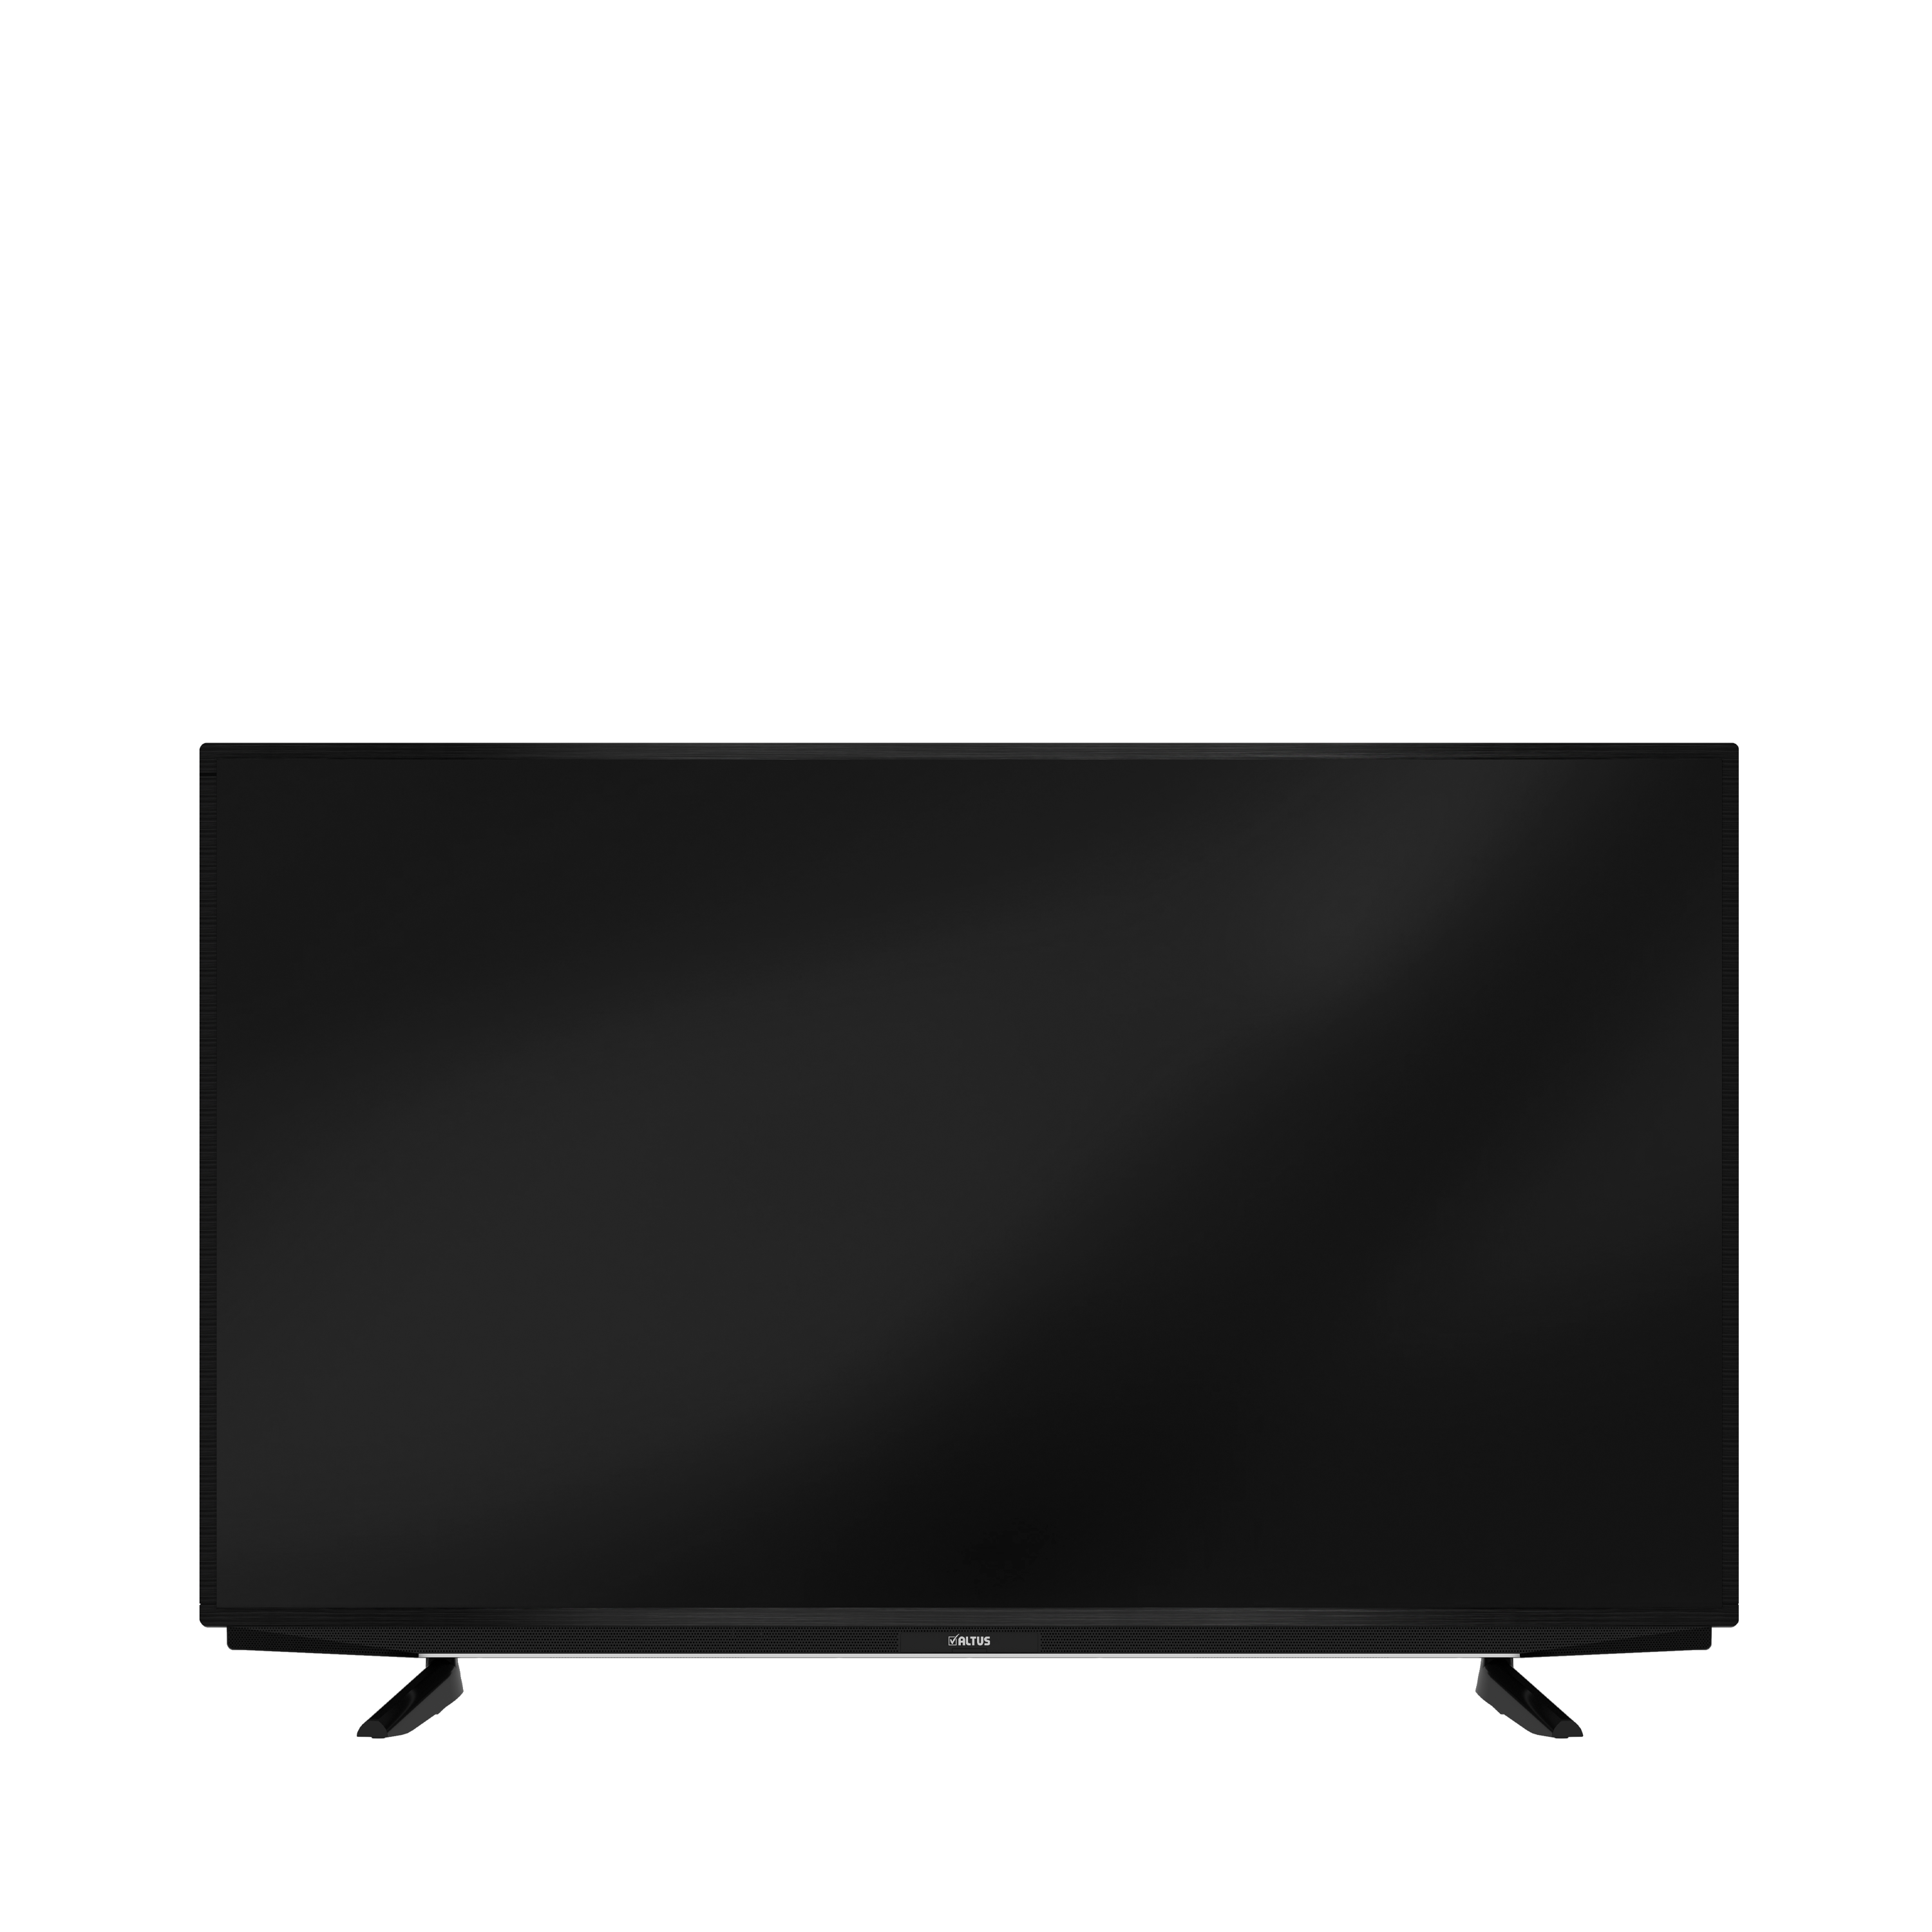 ALTUS AL65 C 880 5B Smart TV (65